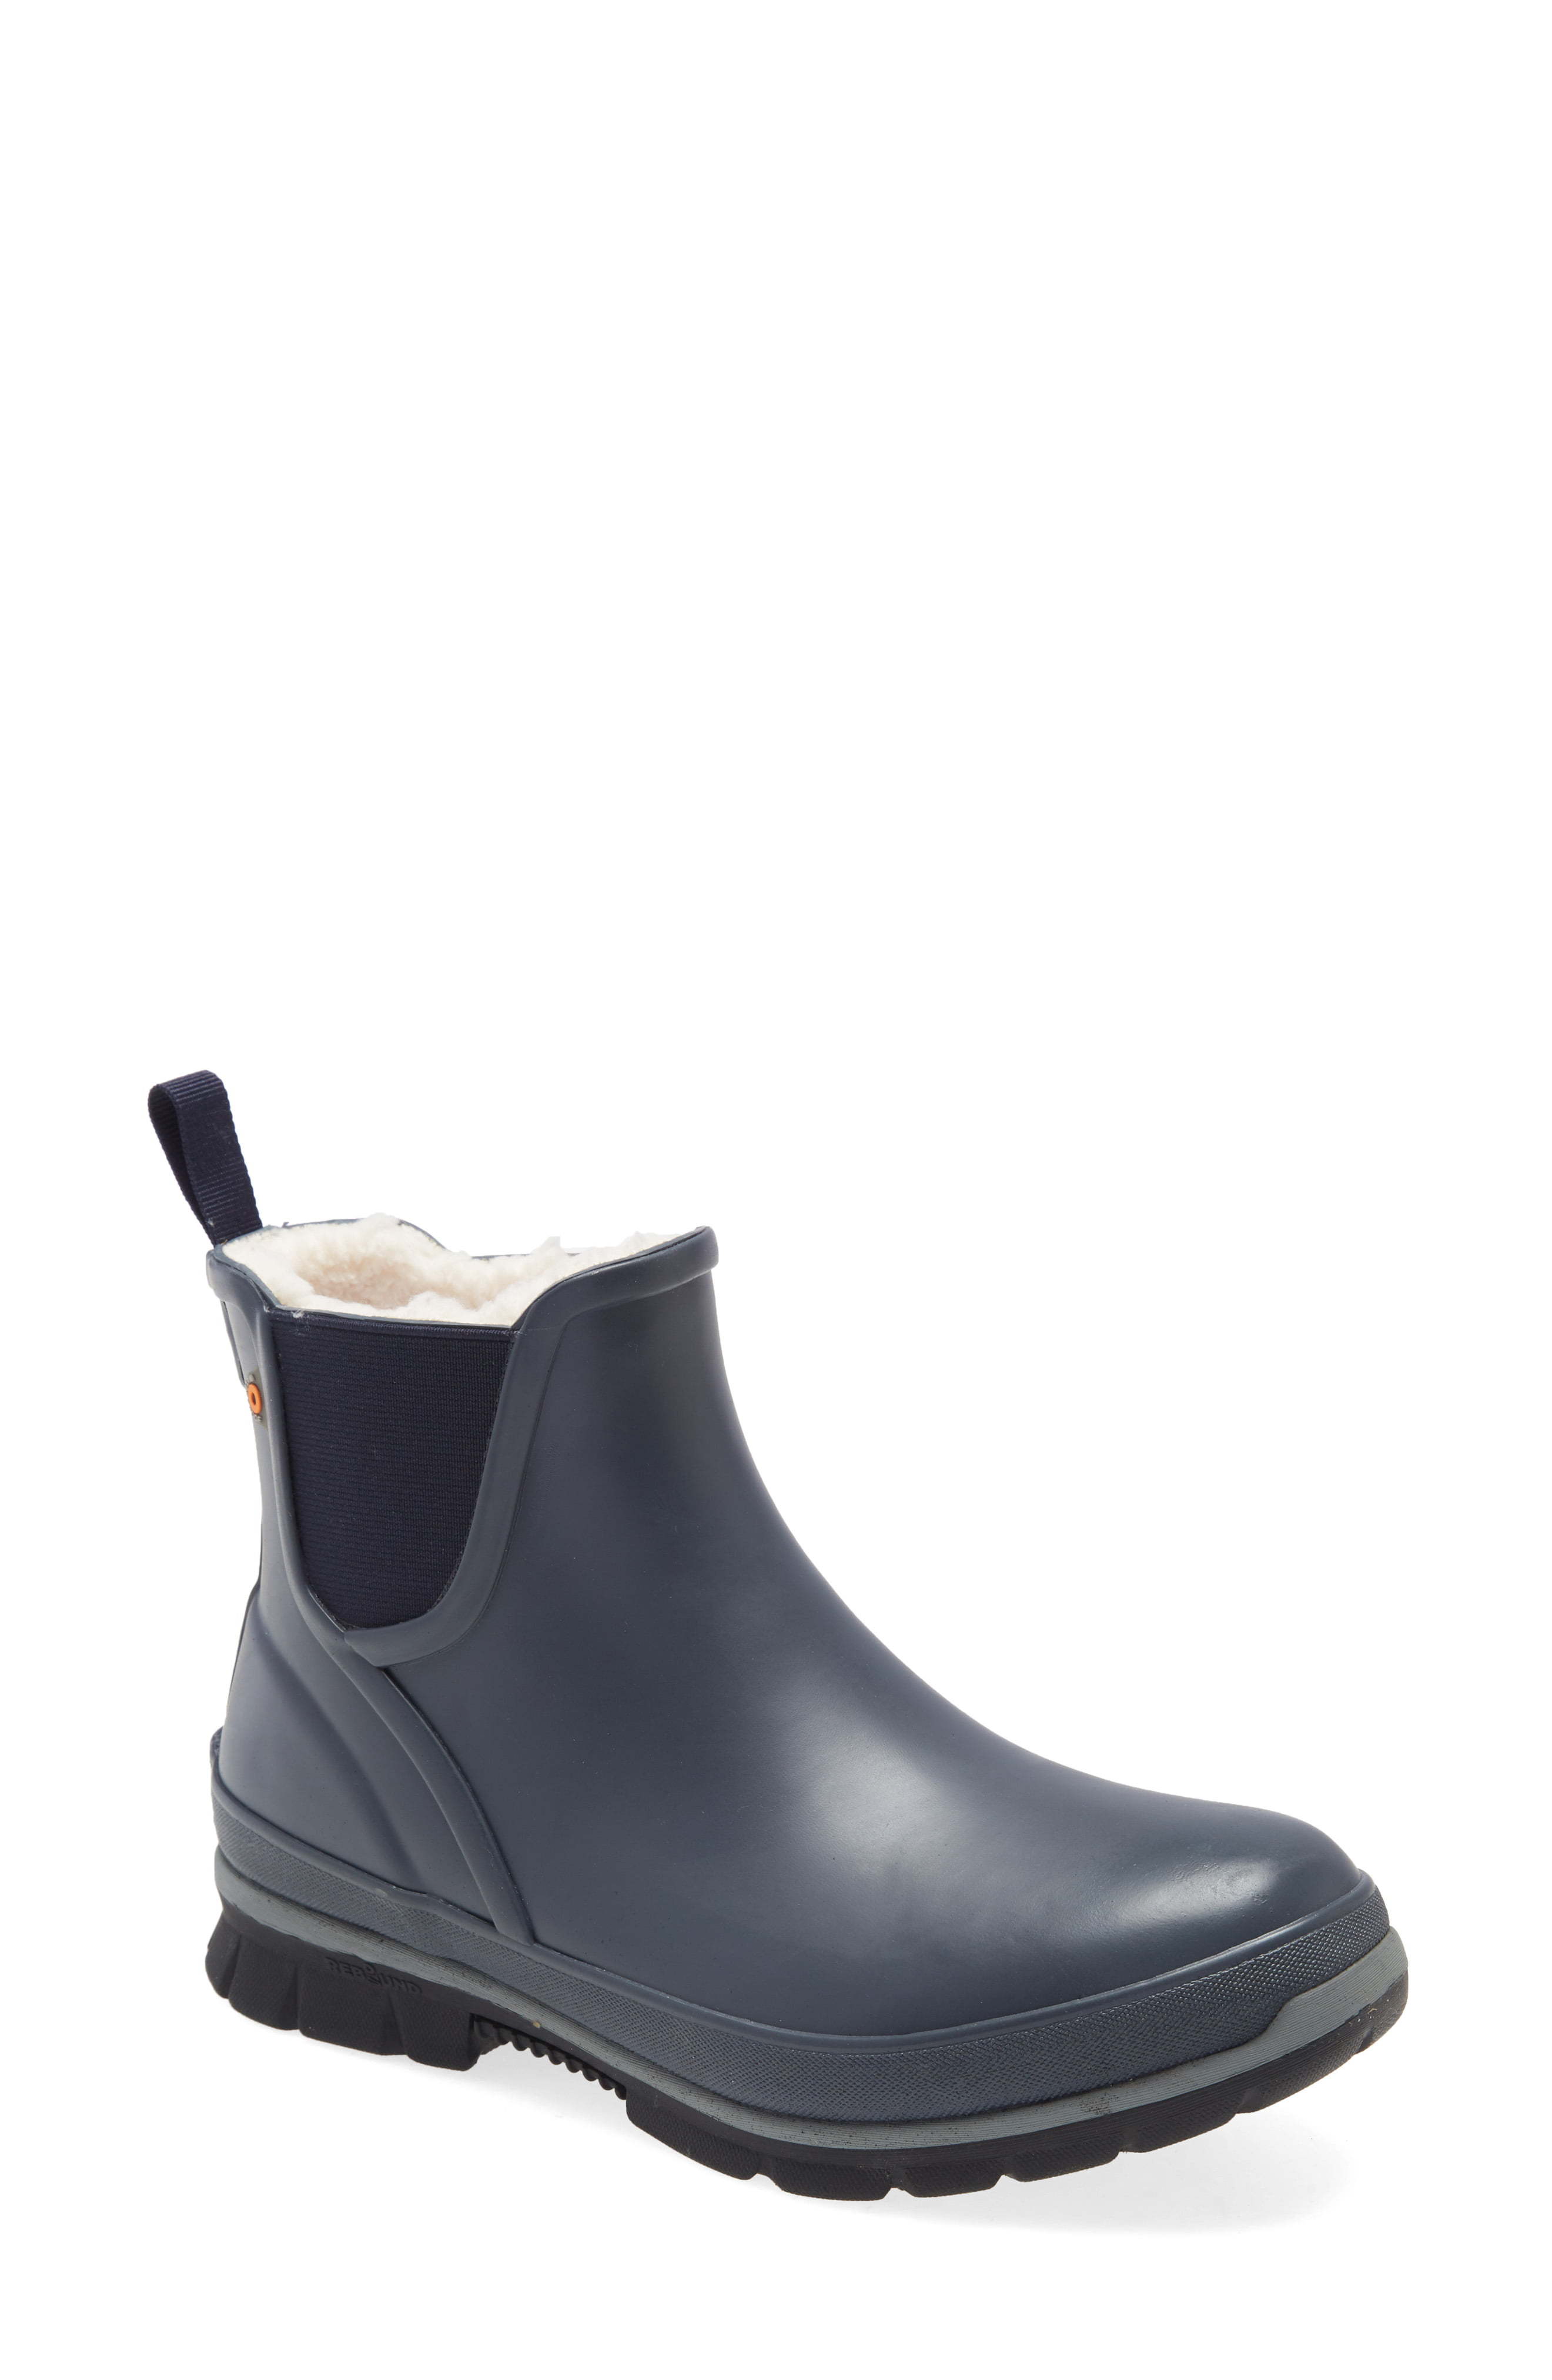 Bogs Amanda Plush Waterproof Slip On Boot, $90 | Nordstrom | Lookastic